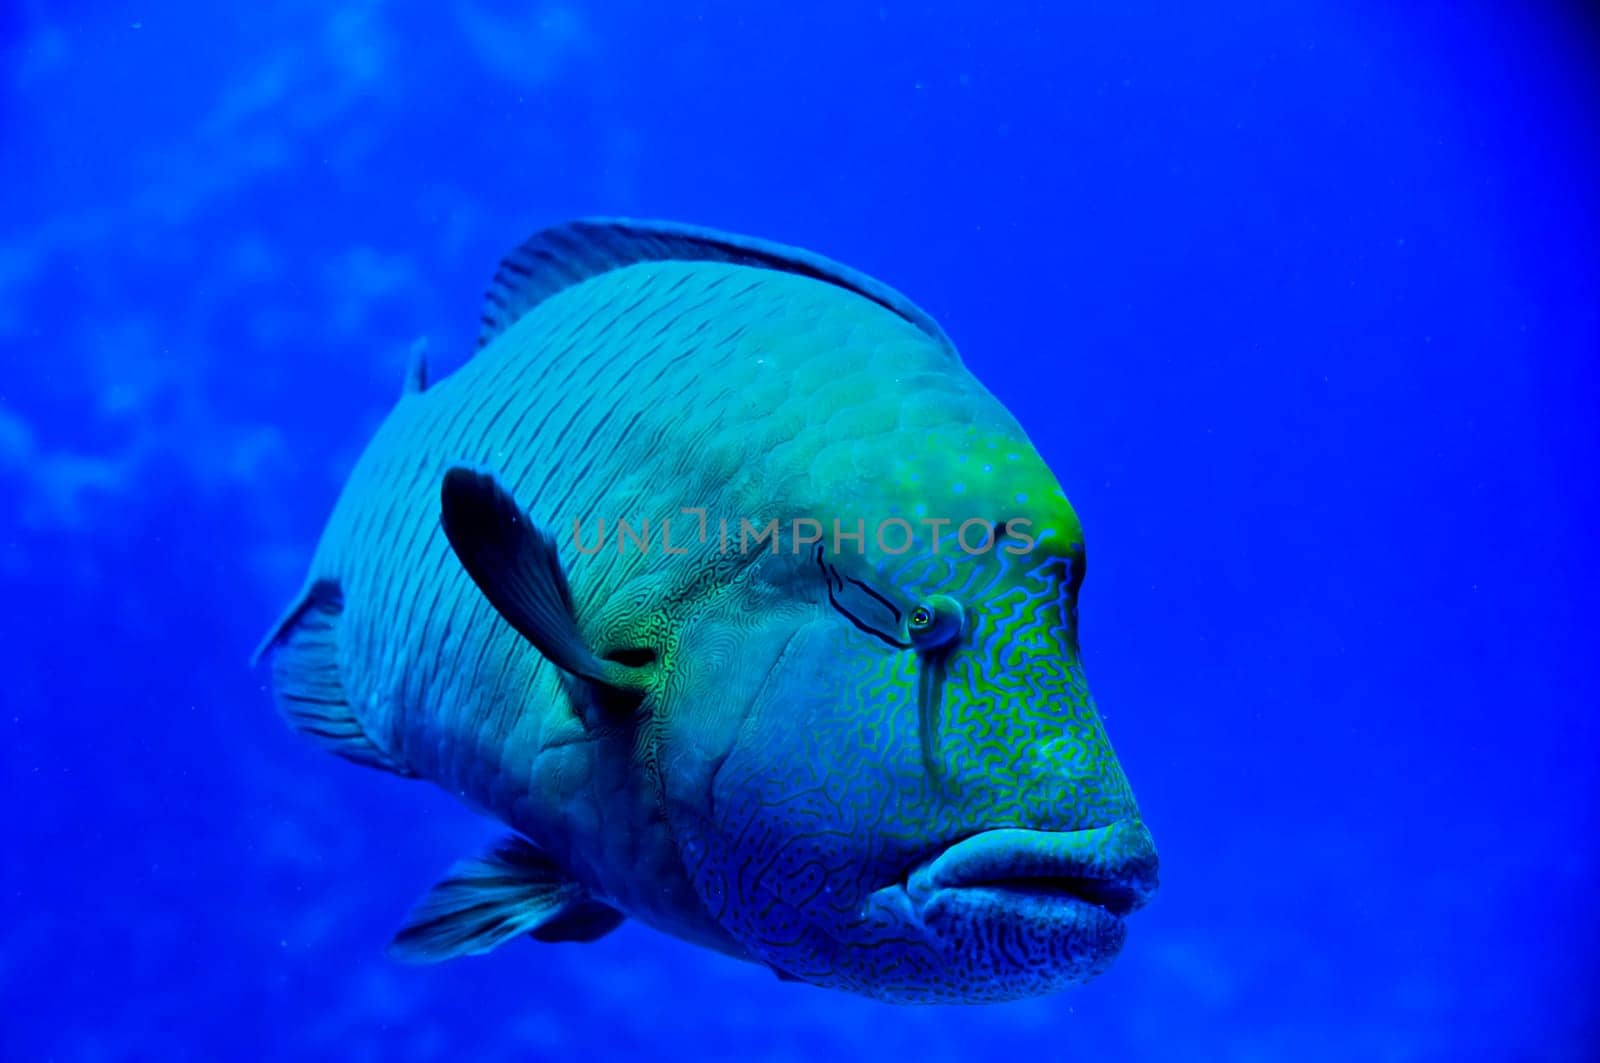 Red Sea Napoleon Fish close up portrait by AndreaIzzotti